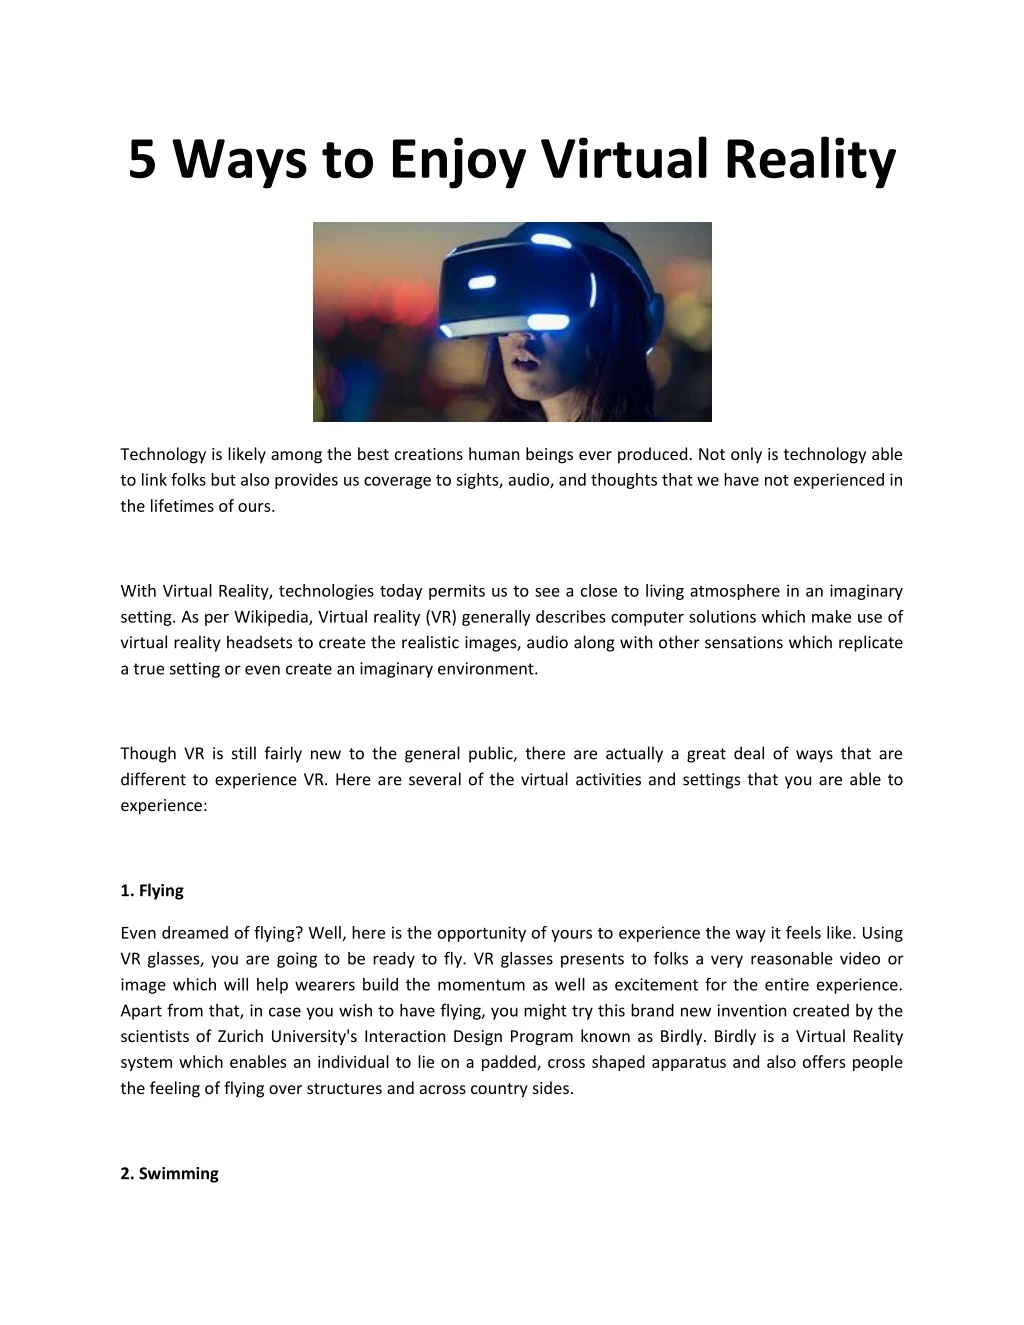 5 ways to enjoy virtual reality